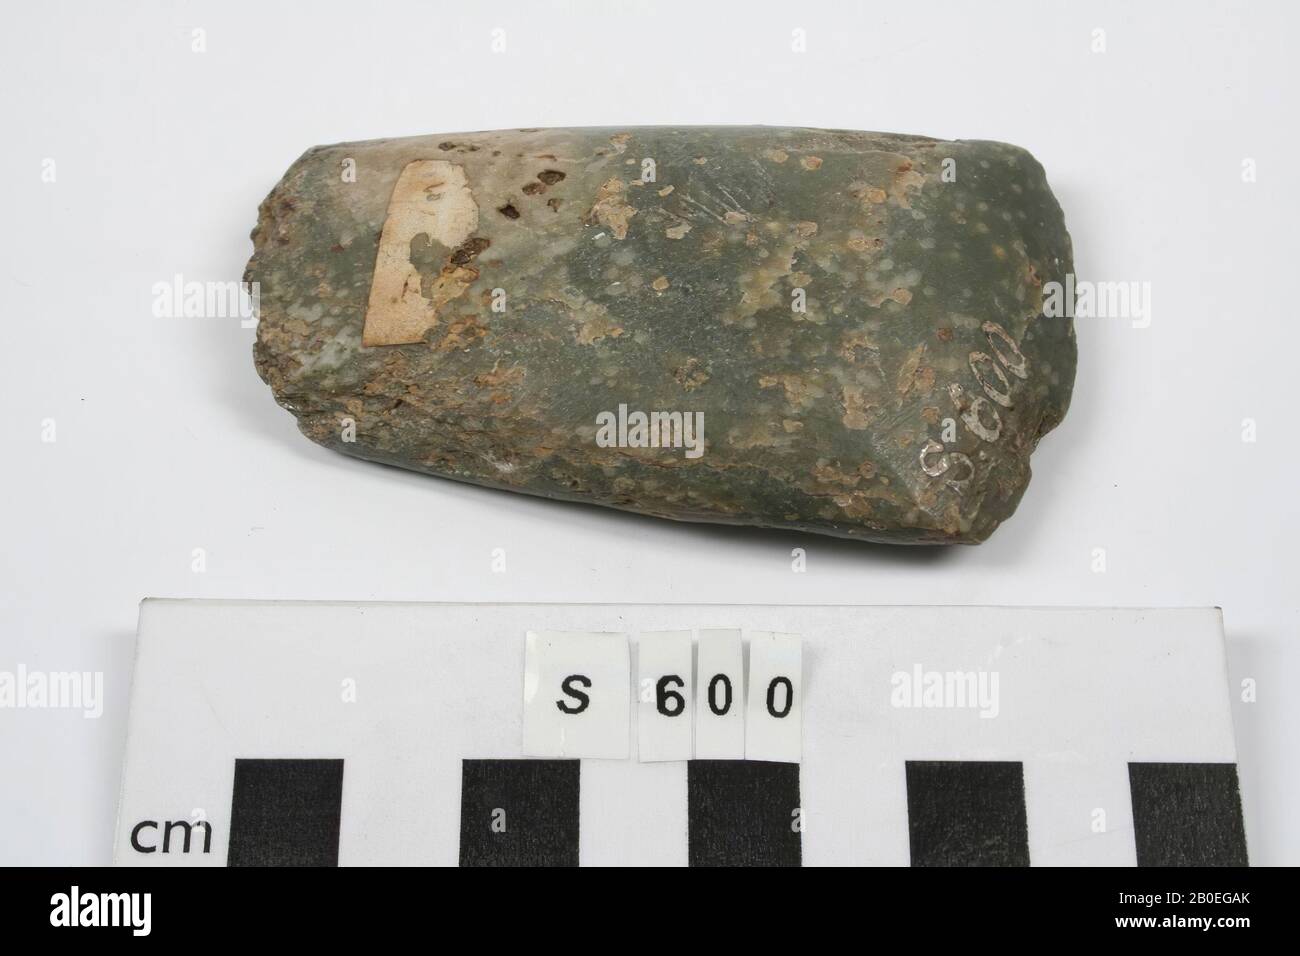 Un hacha de piedra oblongo, abierto al corte., Herramientas, arma, piedra, L 8.6 cm, pavo Foto de stock